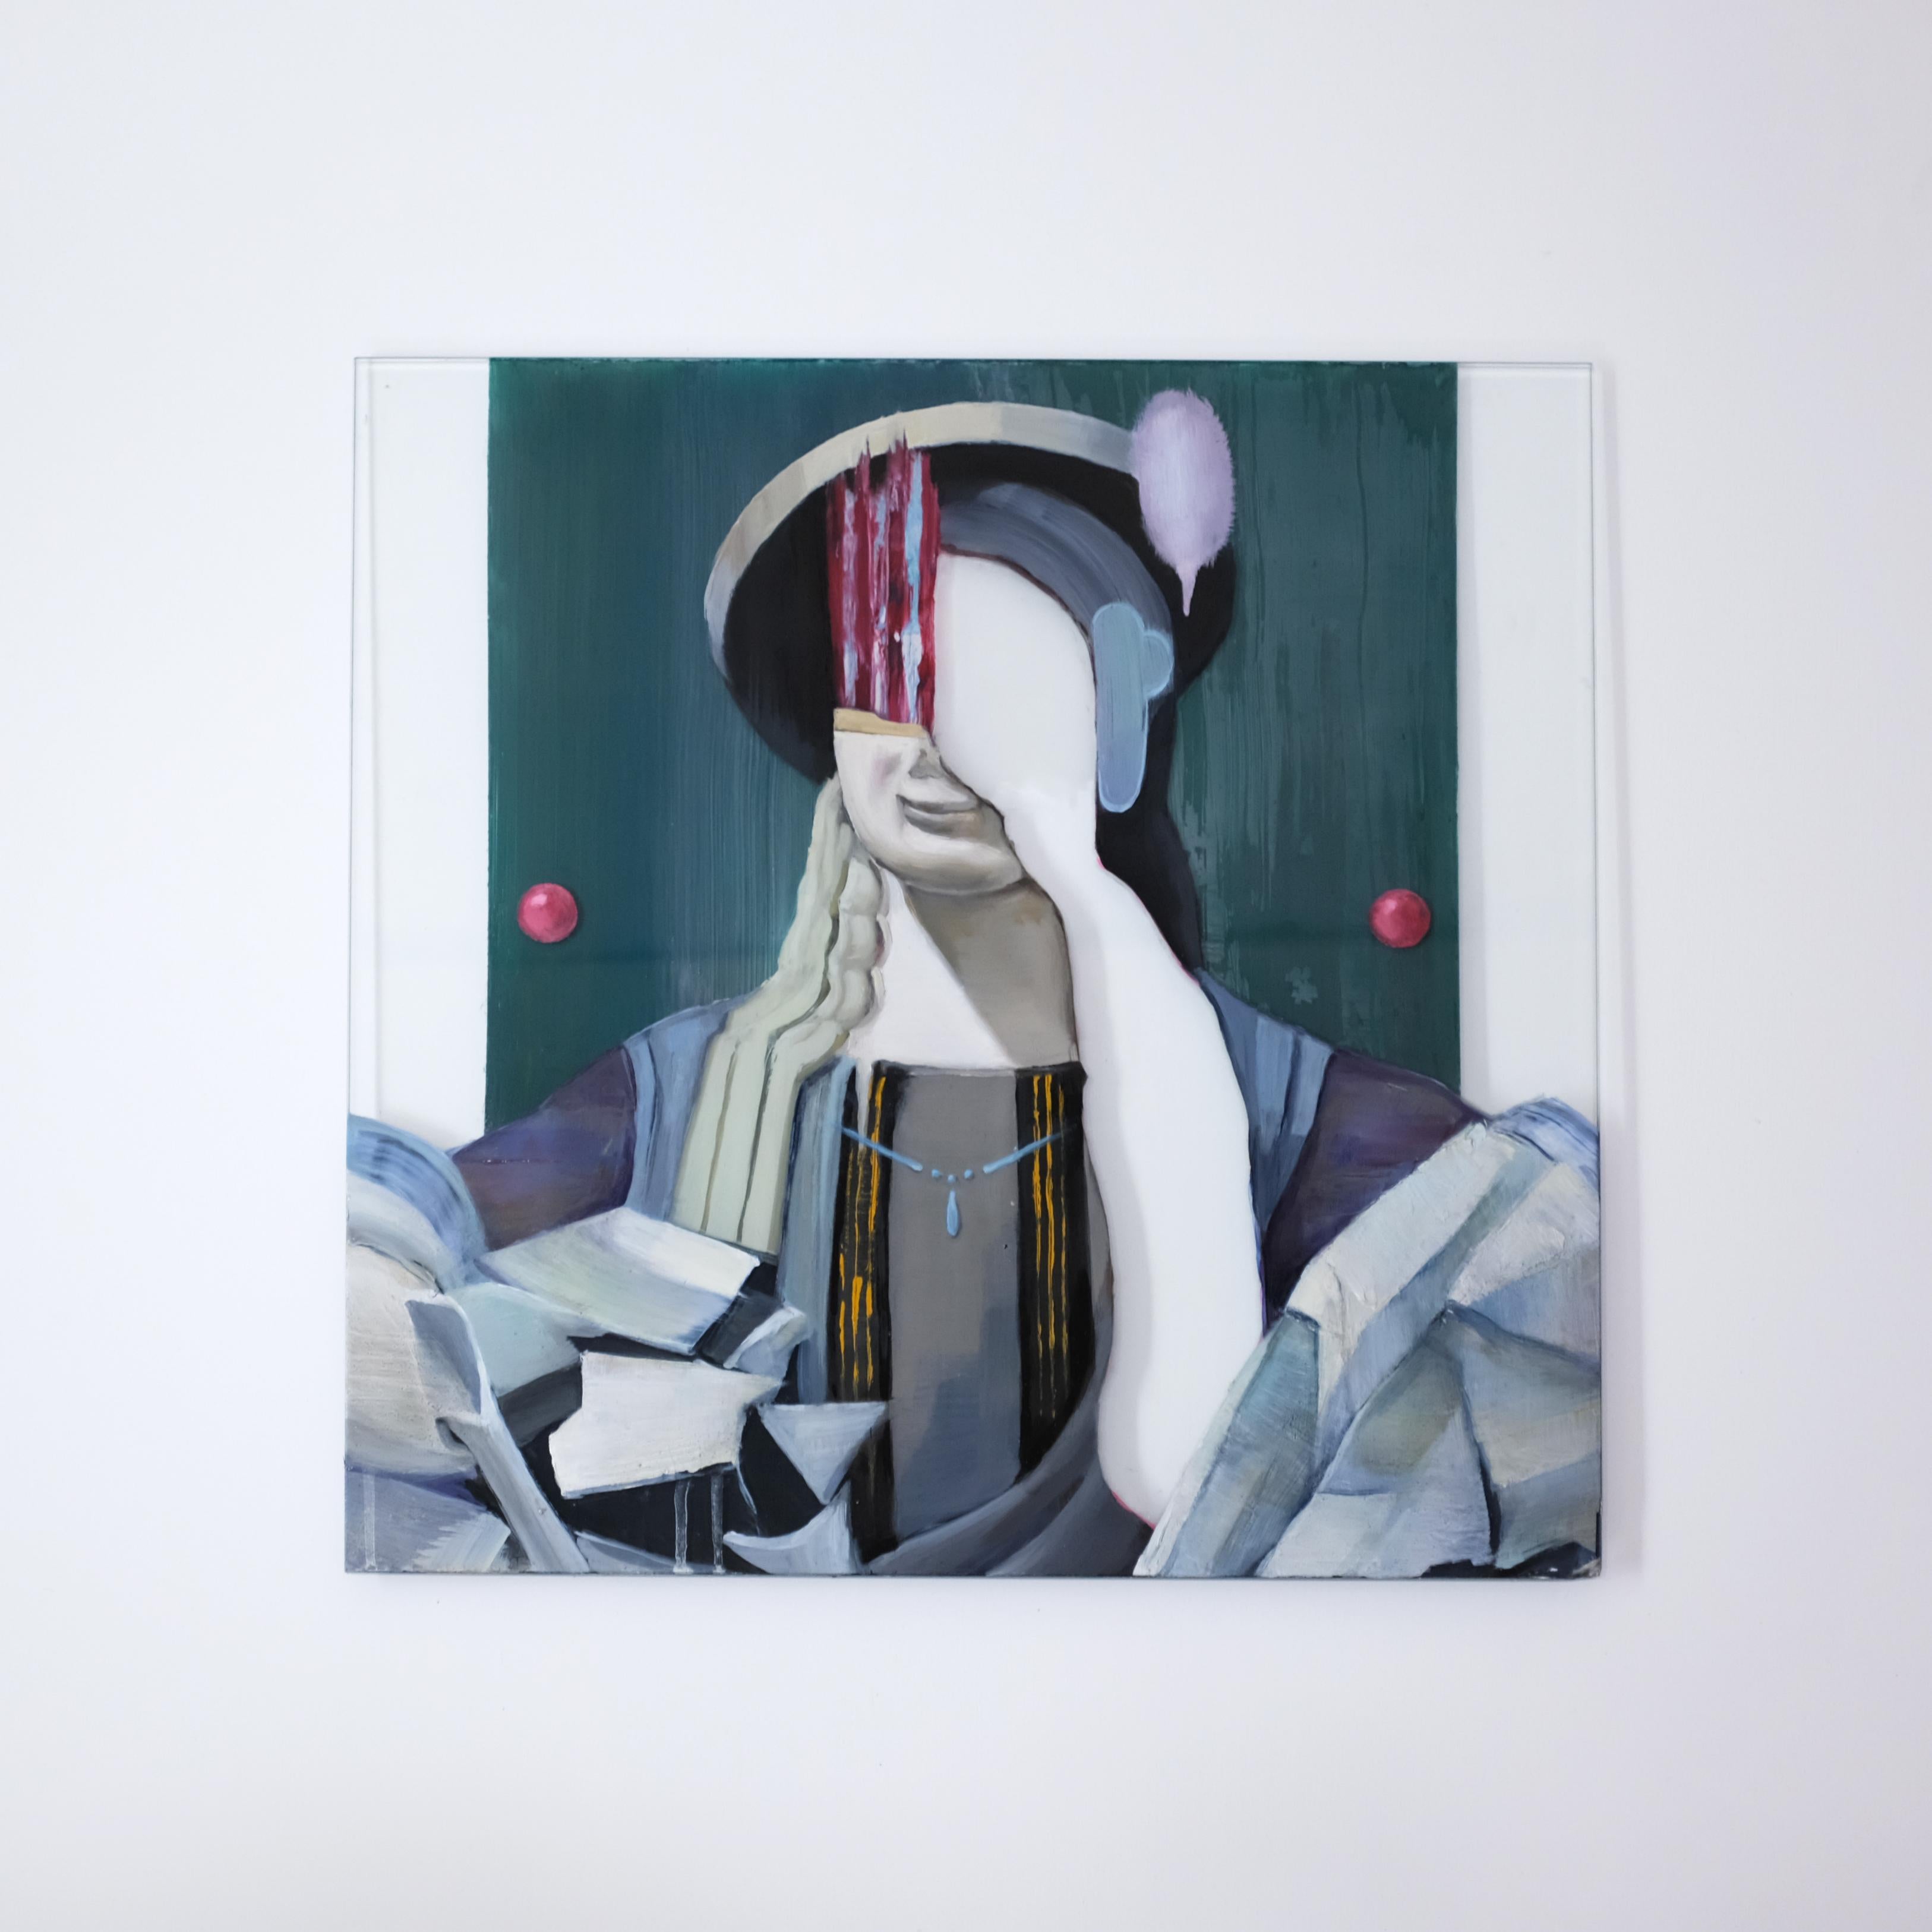 Abstract Painting Akihiko Sugiura - Une personne qui était autrefois une ennemie